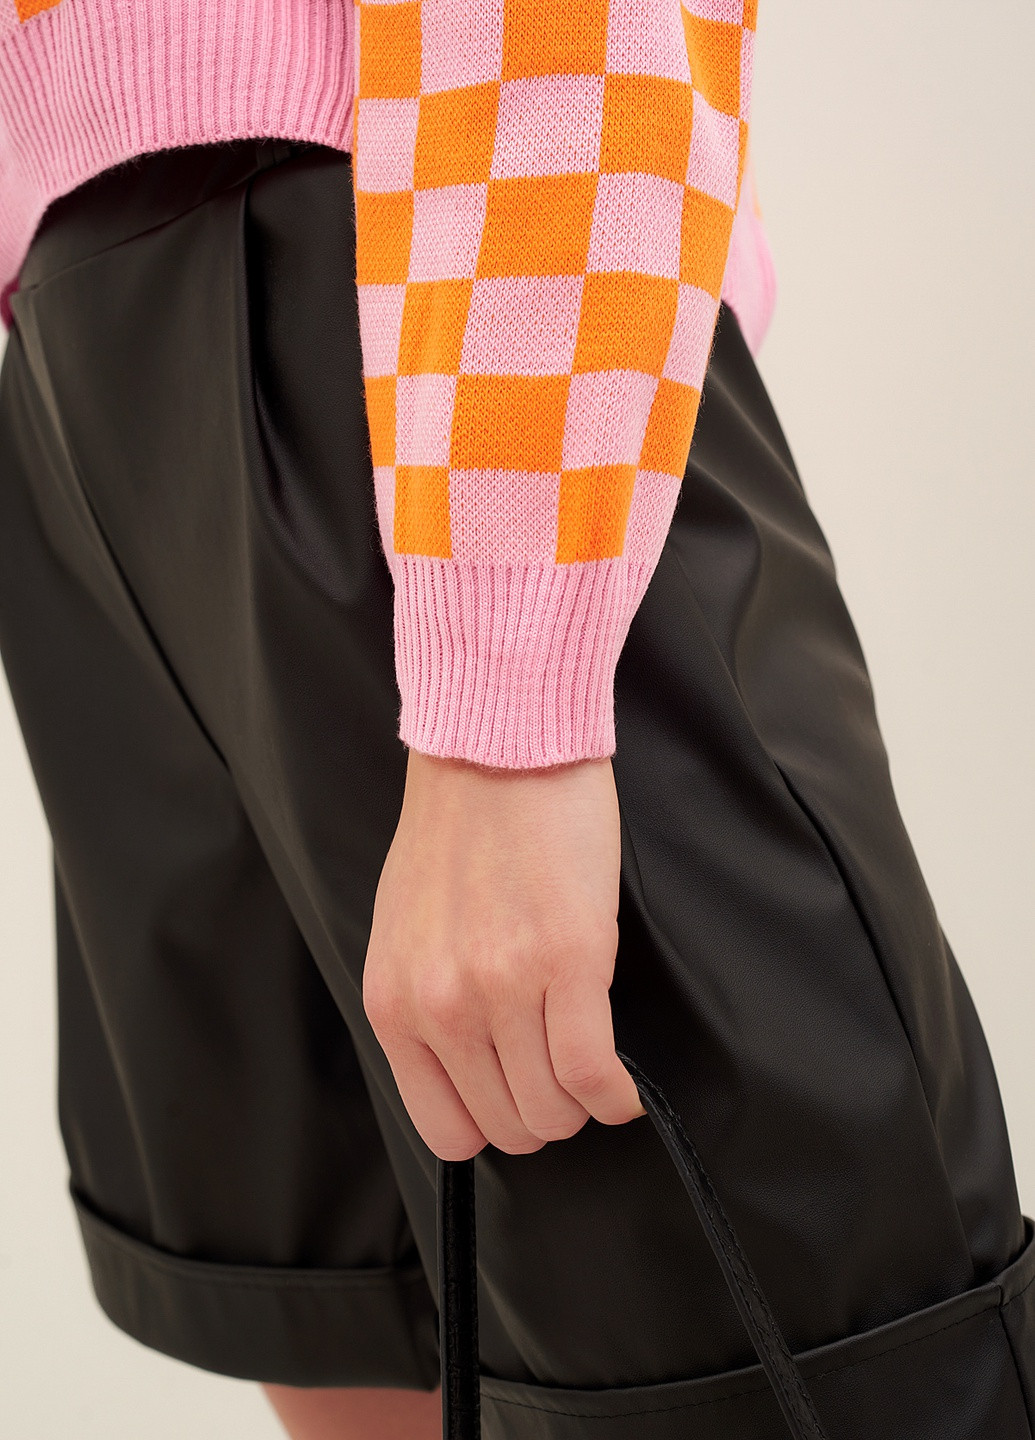 Оранжевый демисезонный свитер Park Karon